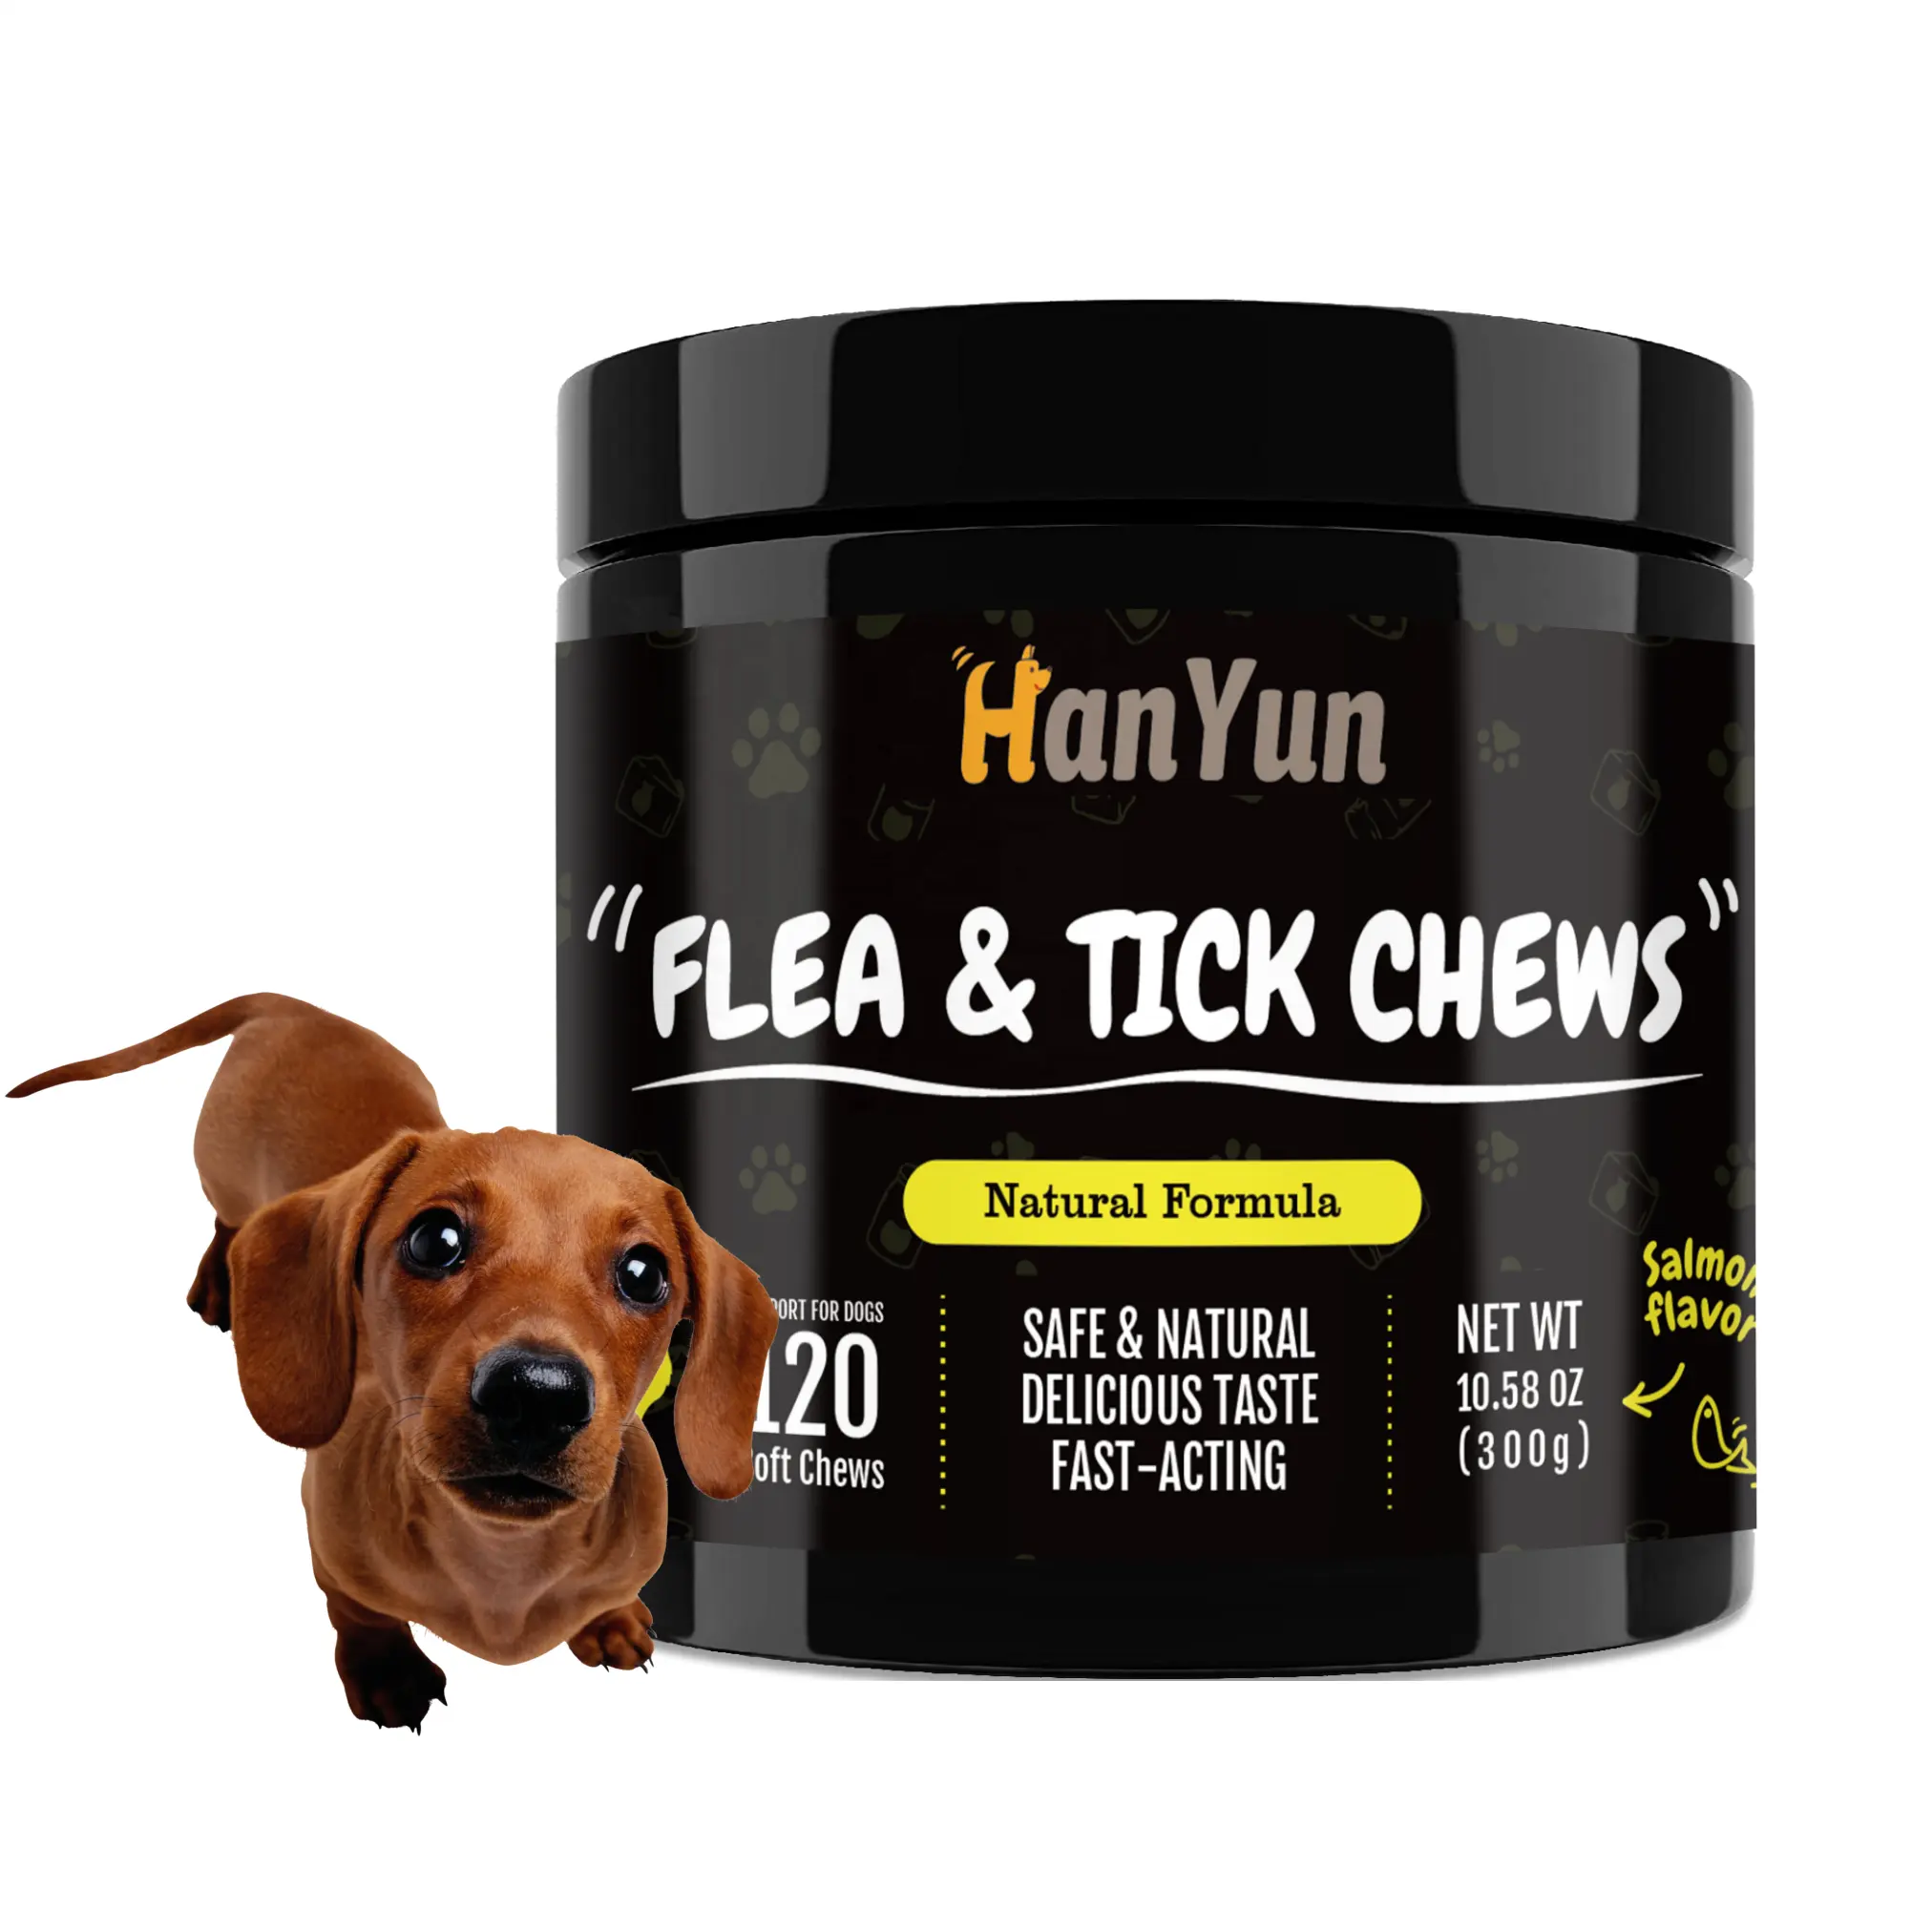 Hananyun निजी लेबल नरम चाव प्राकृतिक कुत्ते की त्वचा के स्वास्थ्य के लिए त्वचा के स्वास्थ्य के लिए